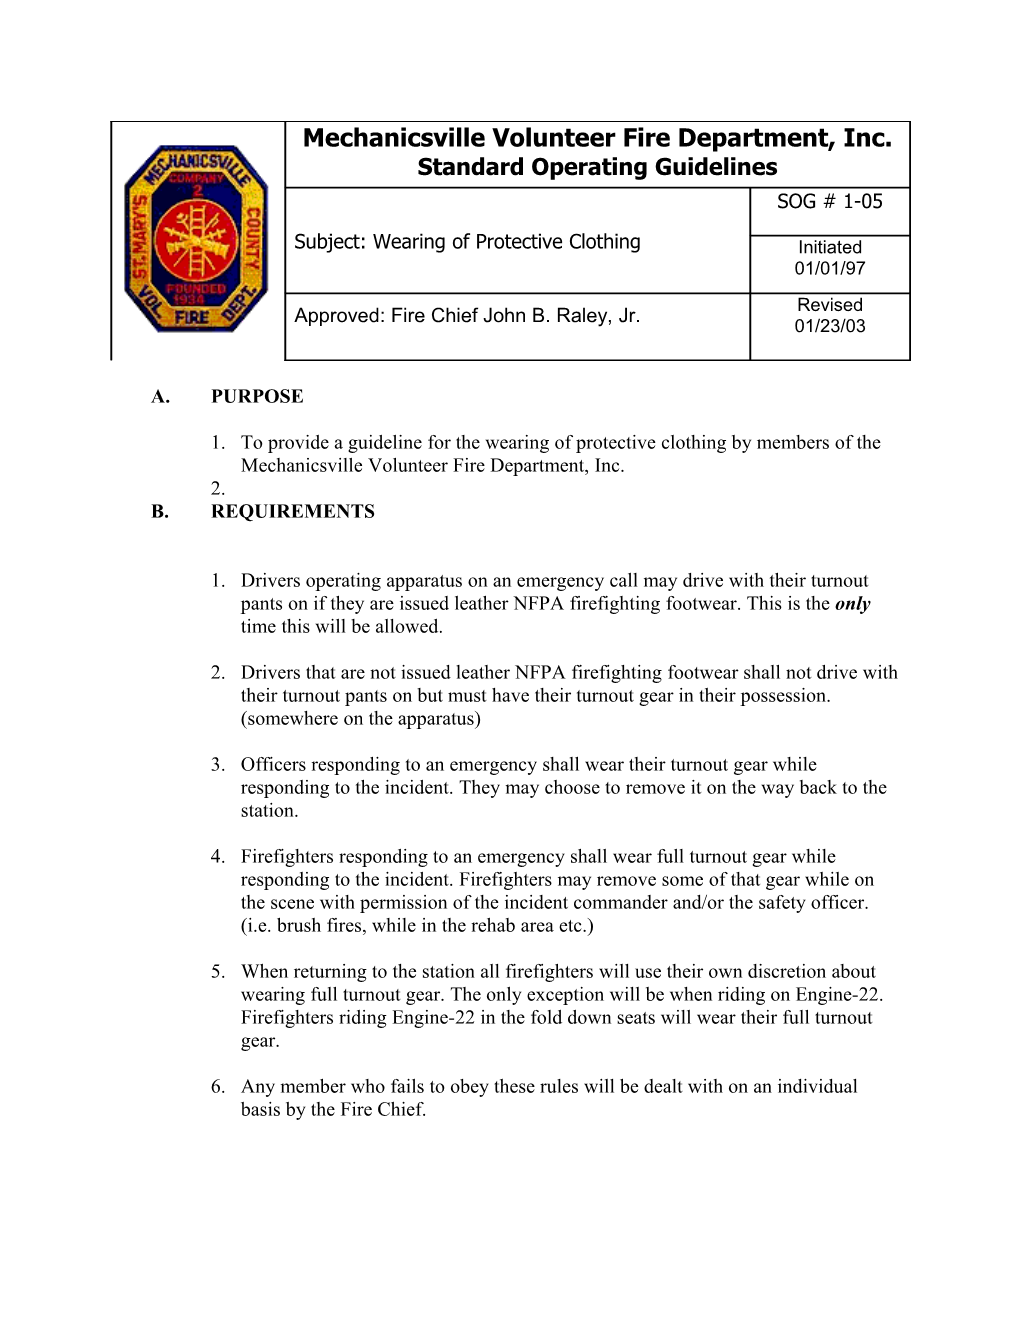 Mechanicsville Volunteer Fire Department, Inc. Standard Operating Guidelines